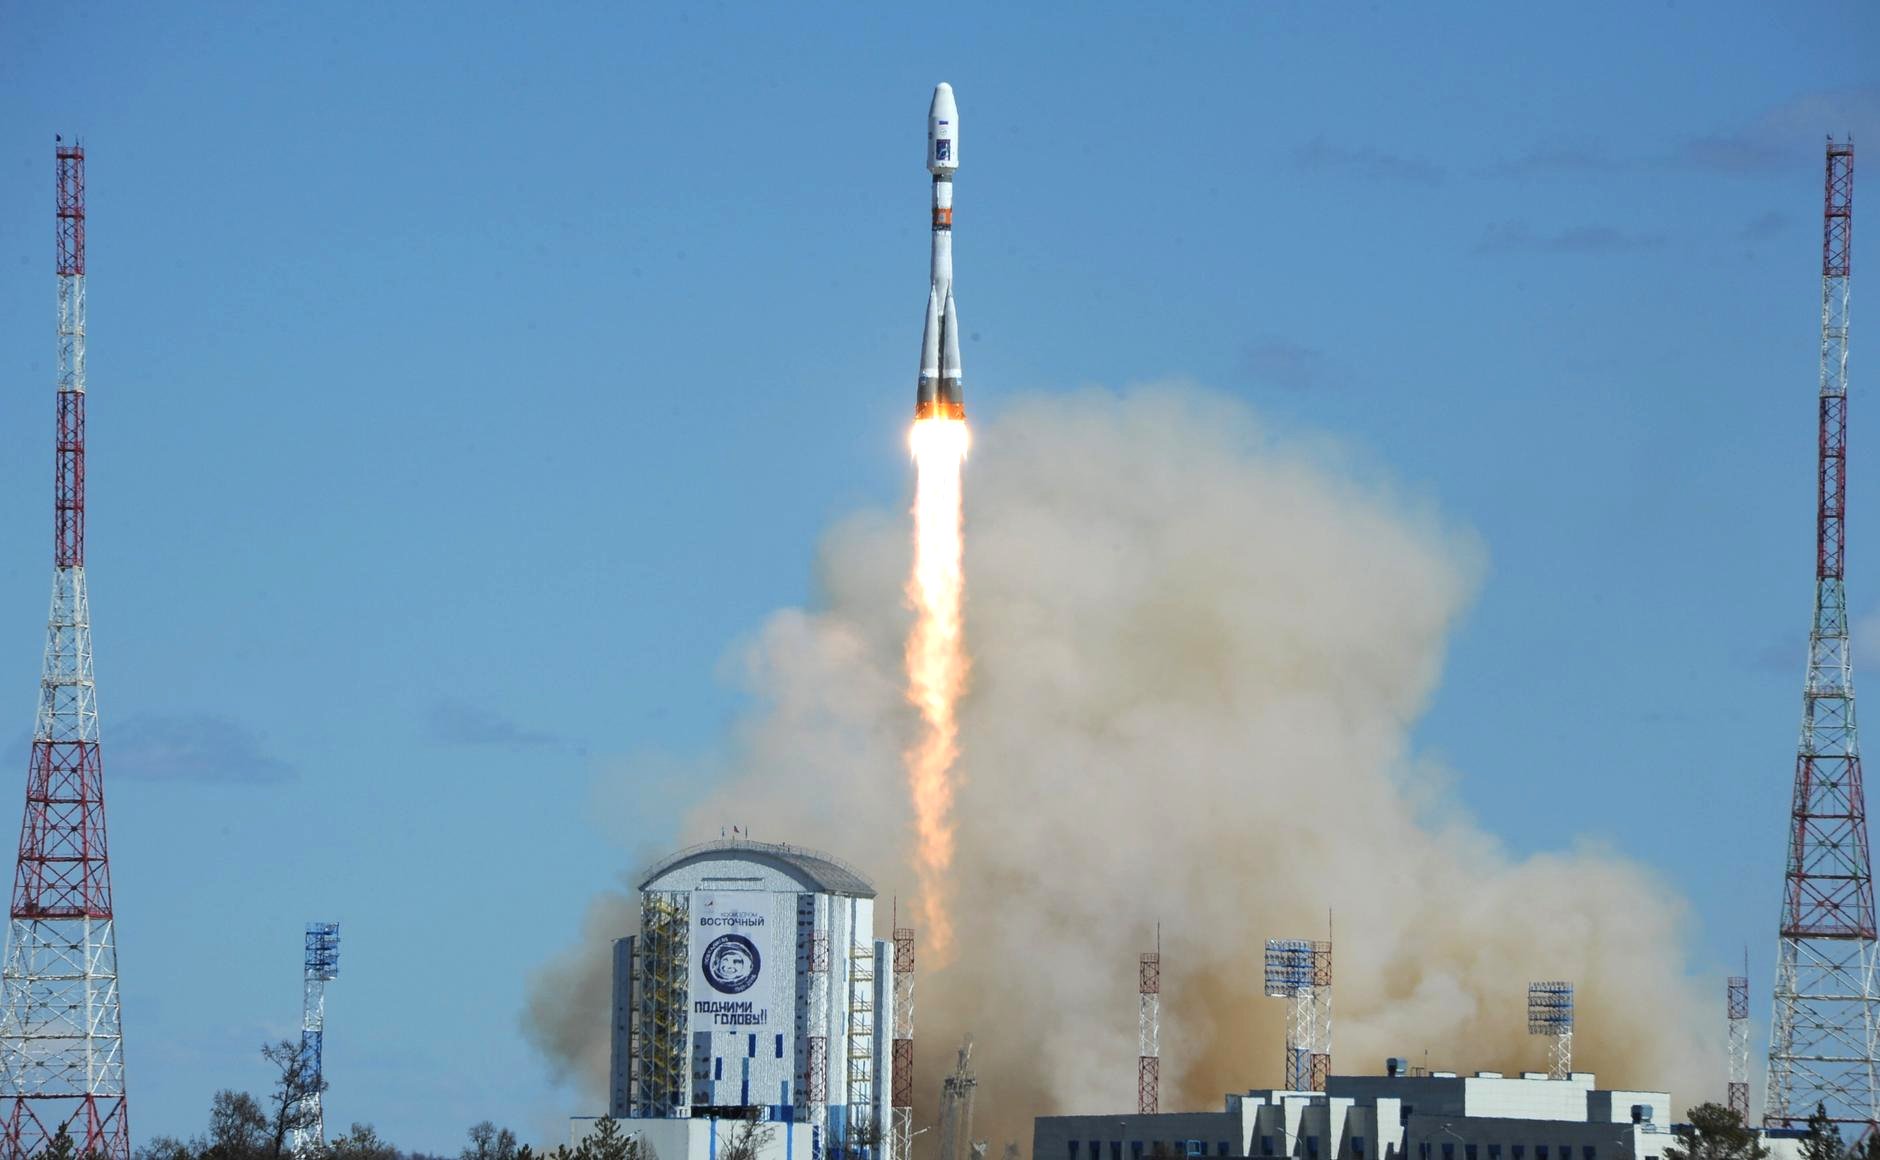 Запуск ракеты-носителя «Союз-2.1а» с космодрома Восточный. На снимке также видно лицо Юрия Гагарина и слоган «Подними голову!» в честь 55-летия его полёта (cc) kremlin.ru